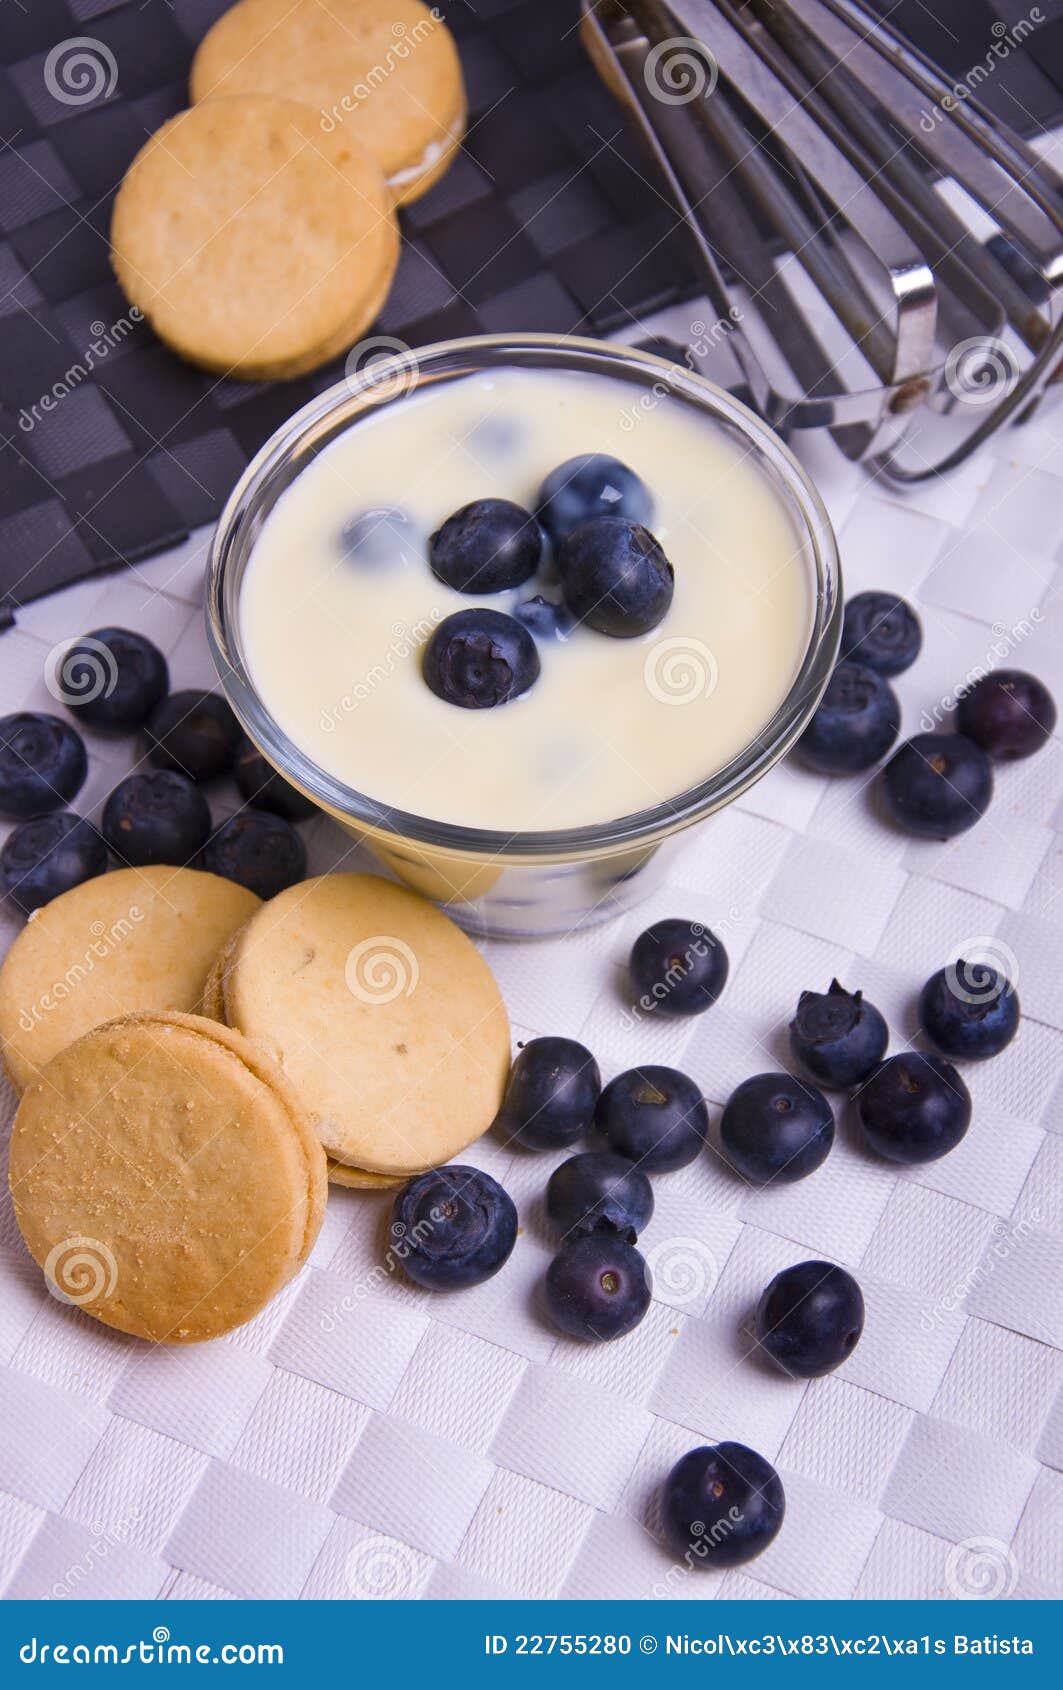 【酸奶蓝莓芝士蛋糕】的做法_【图解】【酸奶蓝莓芝士蛋糕】怎么做如何做好吃_【酸奶蓝莓芝士蛋糕】家常做法大全_REdward_豆果美食